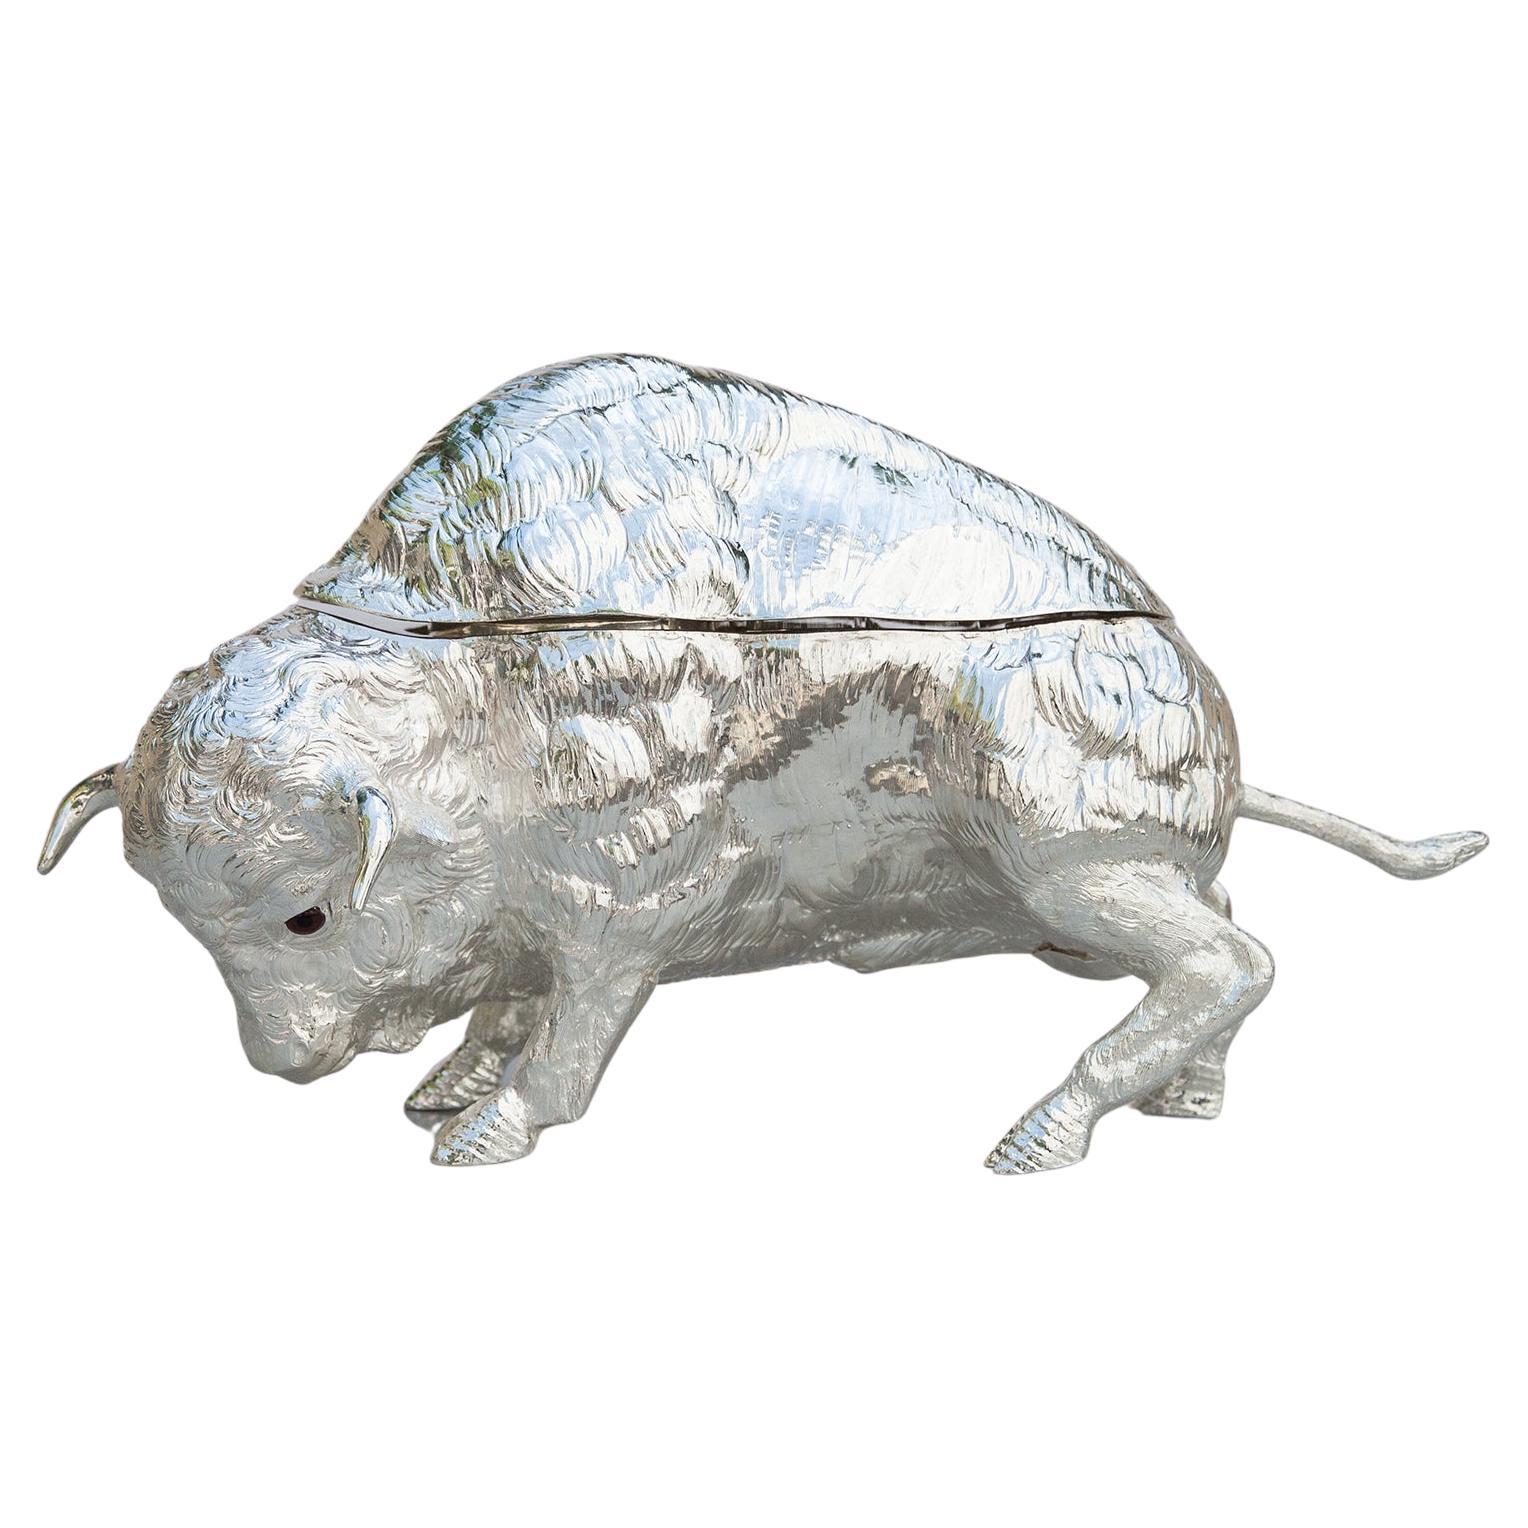 L'exquise sculpture de bison vintage de Franco By est entièrement réalisée en laiton plaqué d'argent et sa surface est légèrement texturée pour lui donner un aspect organique. Sous le couvercle se trouvent quatre verres et une petite carafe. Seul ou